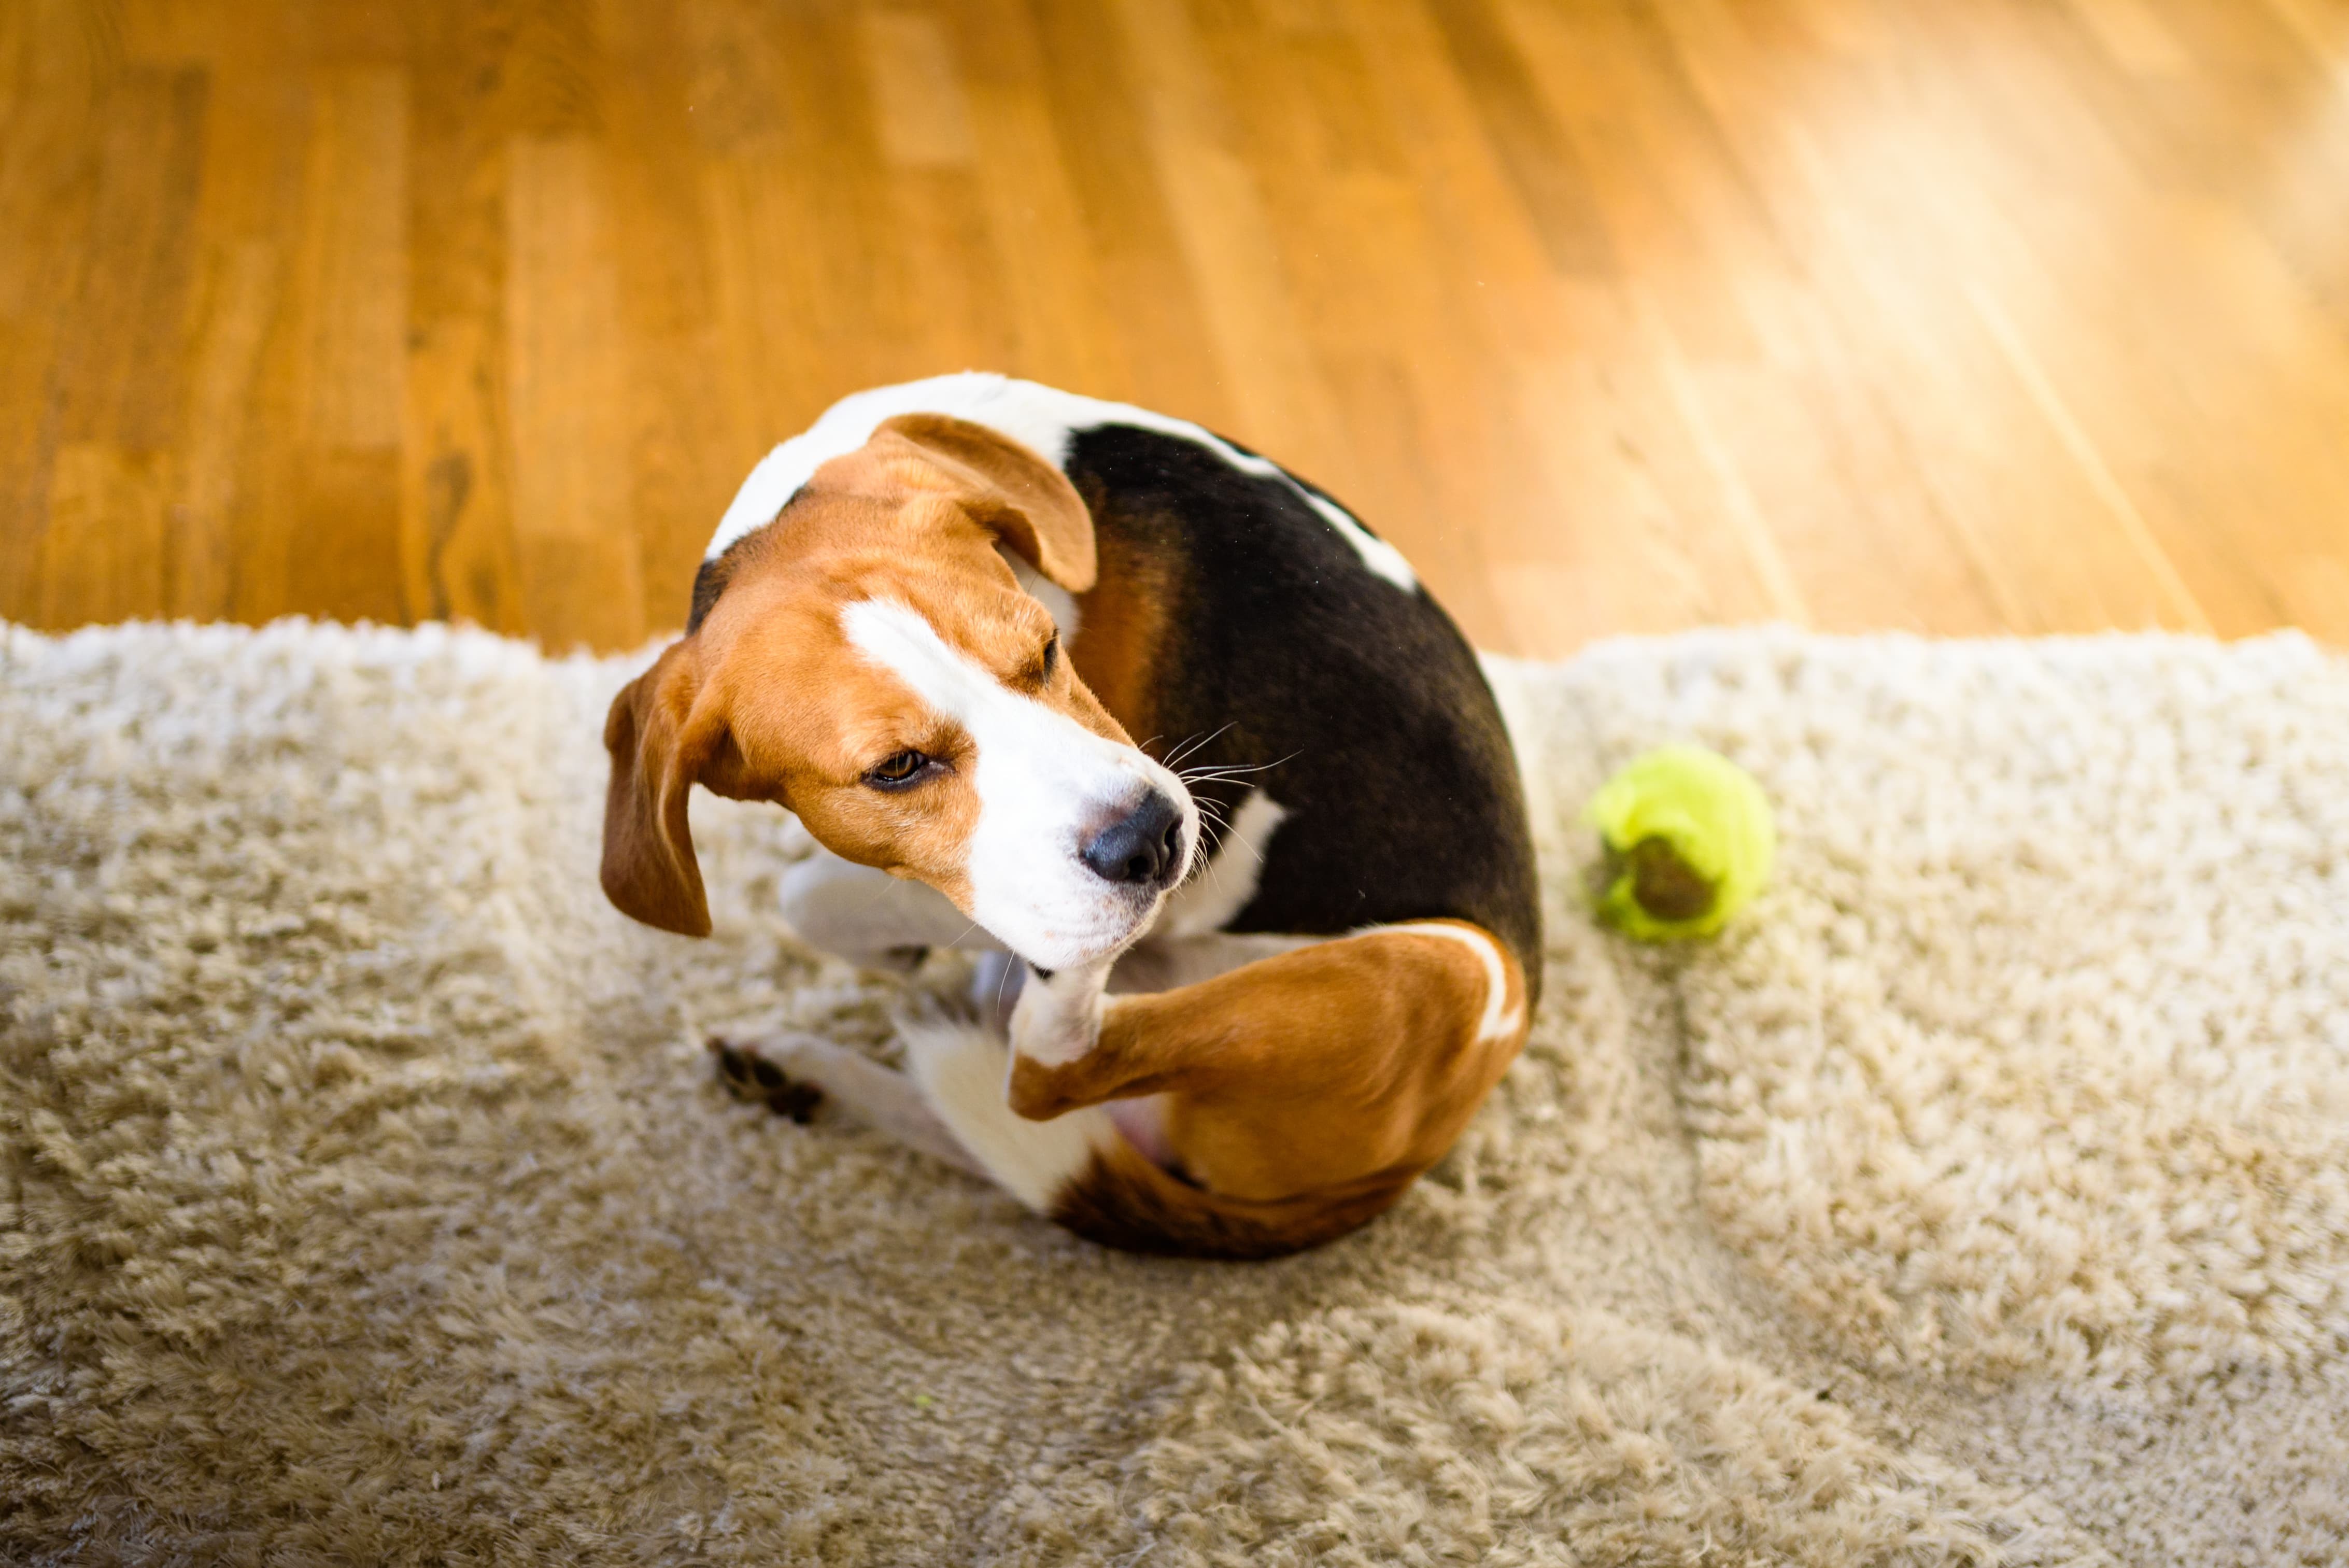 Imagem de um Beagle se coçando, sentado sobre um tapete bege ao lado de uma bolinha amarela, com o piso de madeira ao fundo.